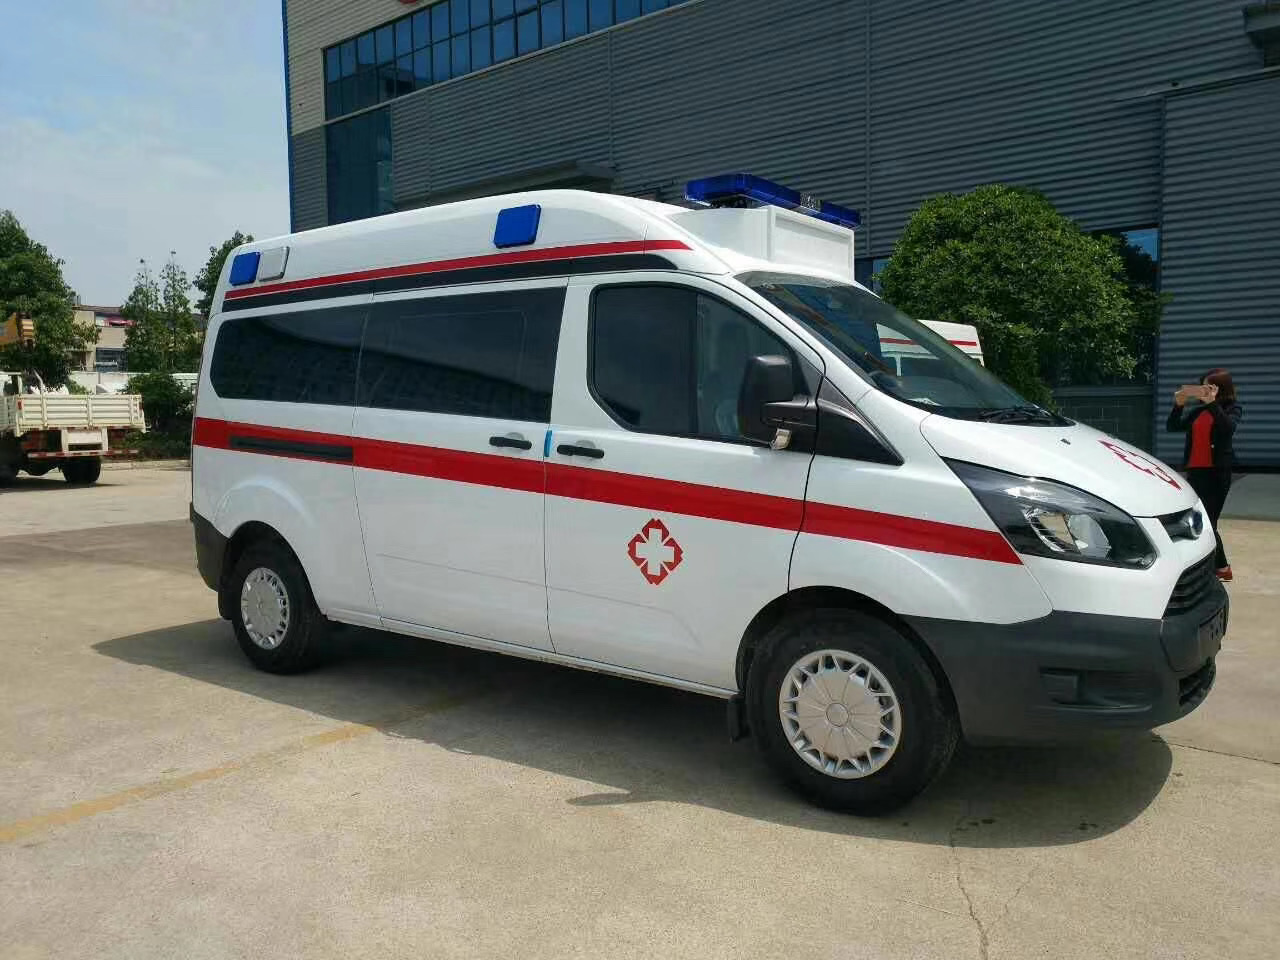 郸城县出院转院救护车